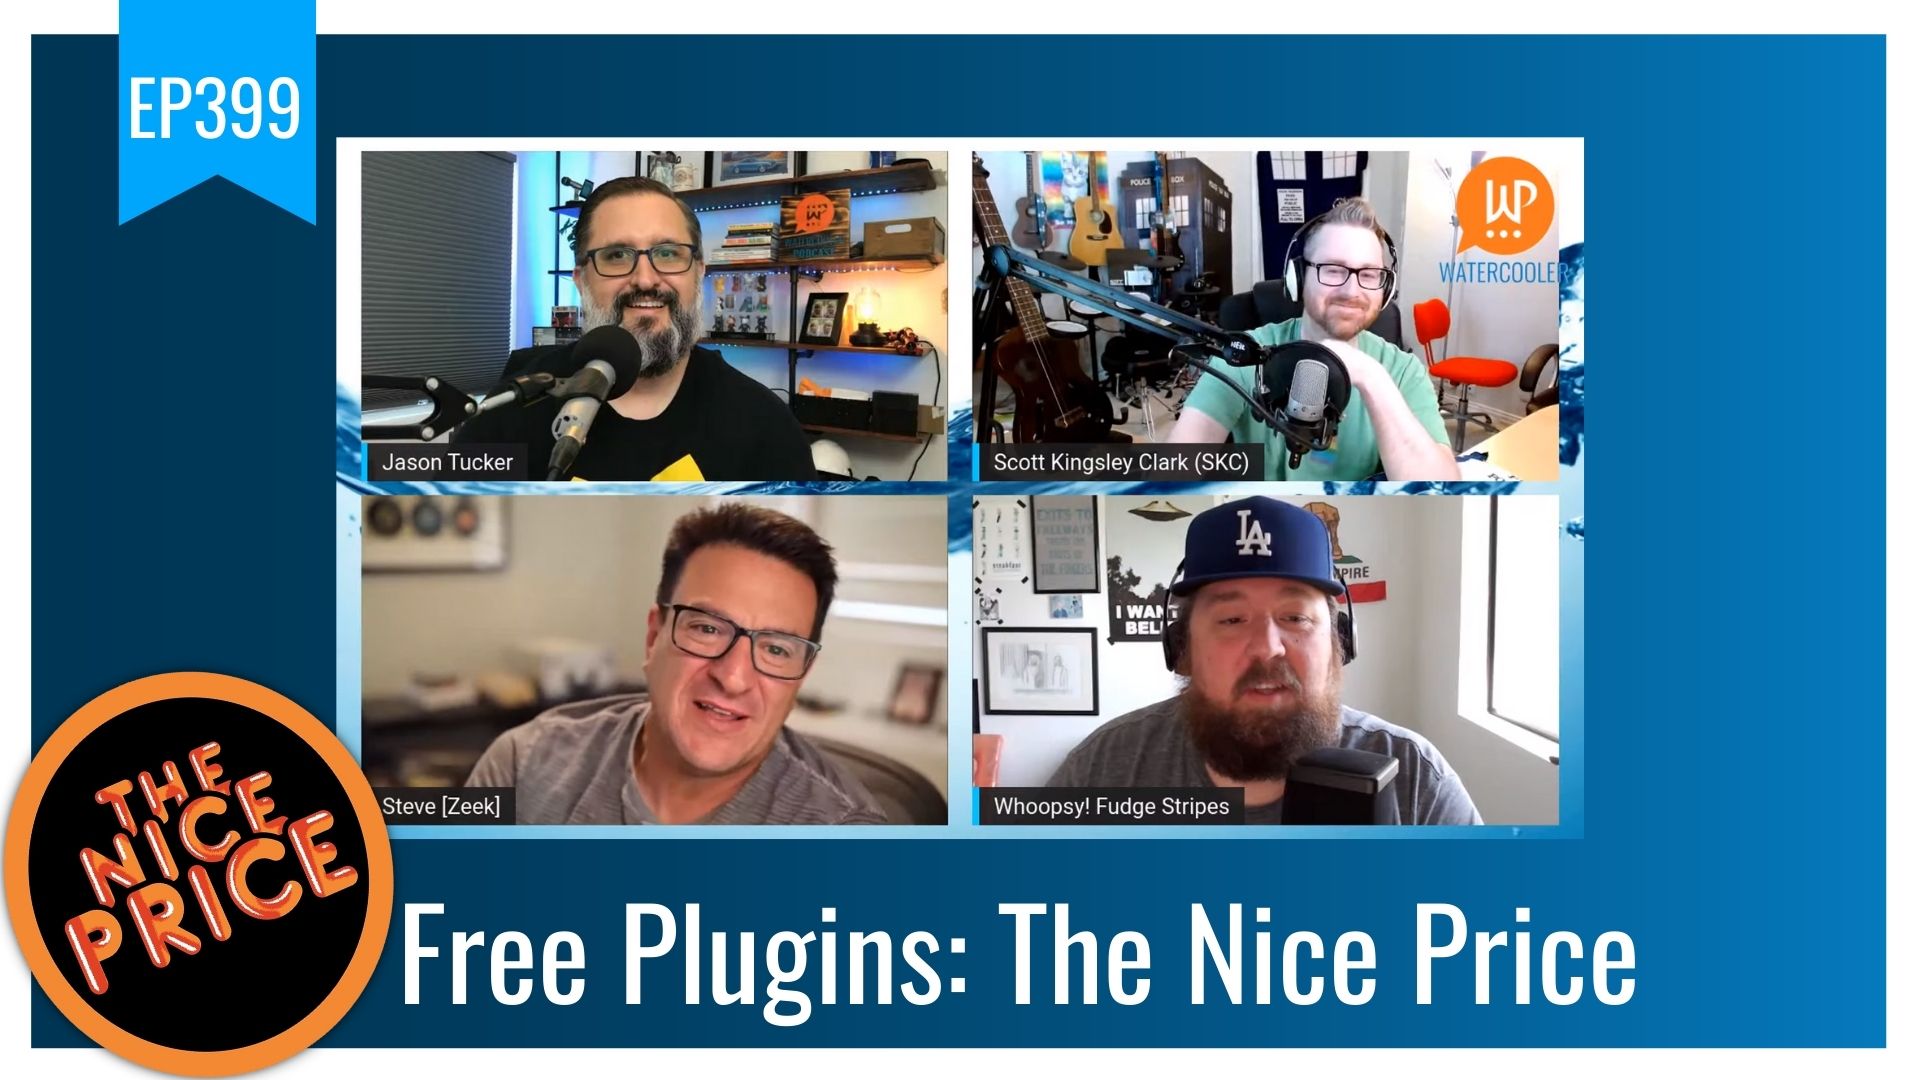 EP399 - Free Plugins: The Nice Price